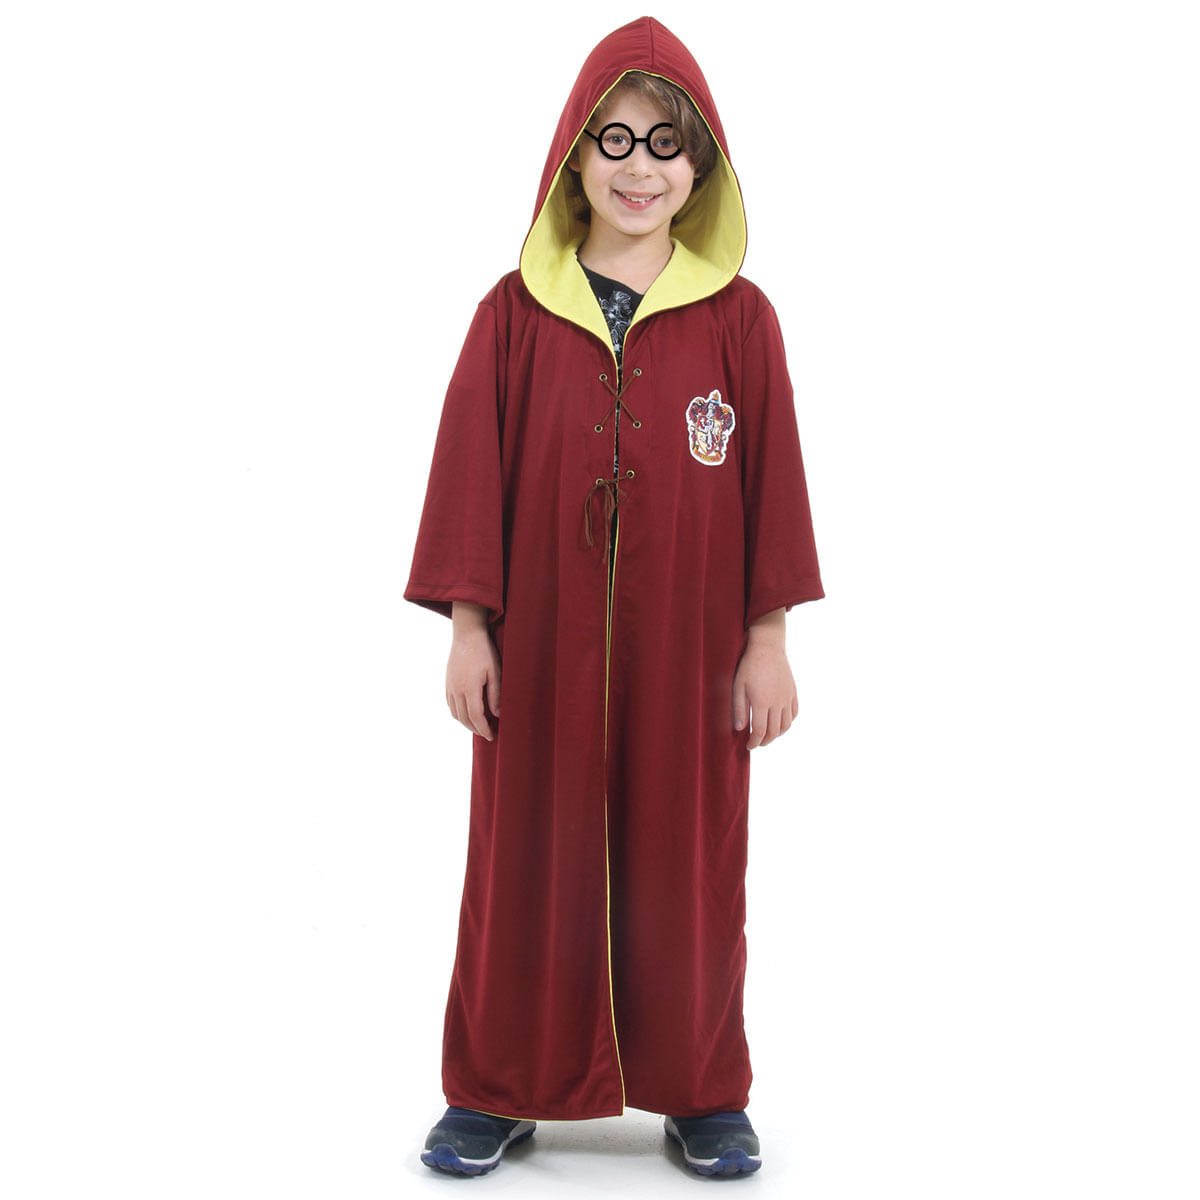 Fantasia Harry Potter Quadribol Infantil Original com Óculos - Harry Potter P / UNICA